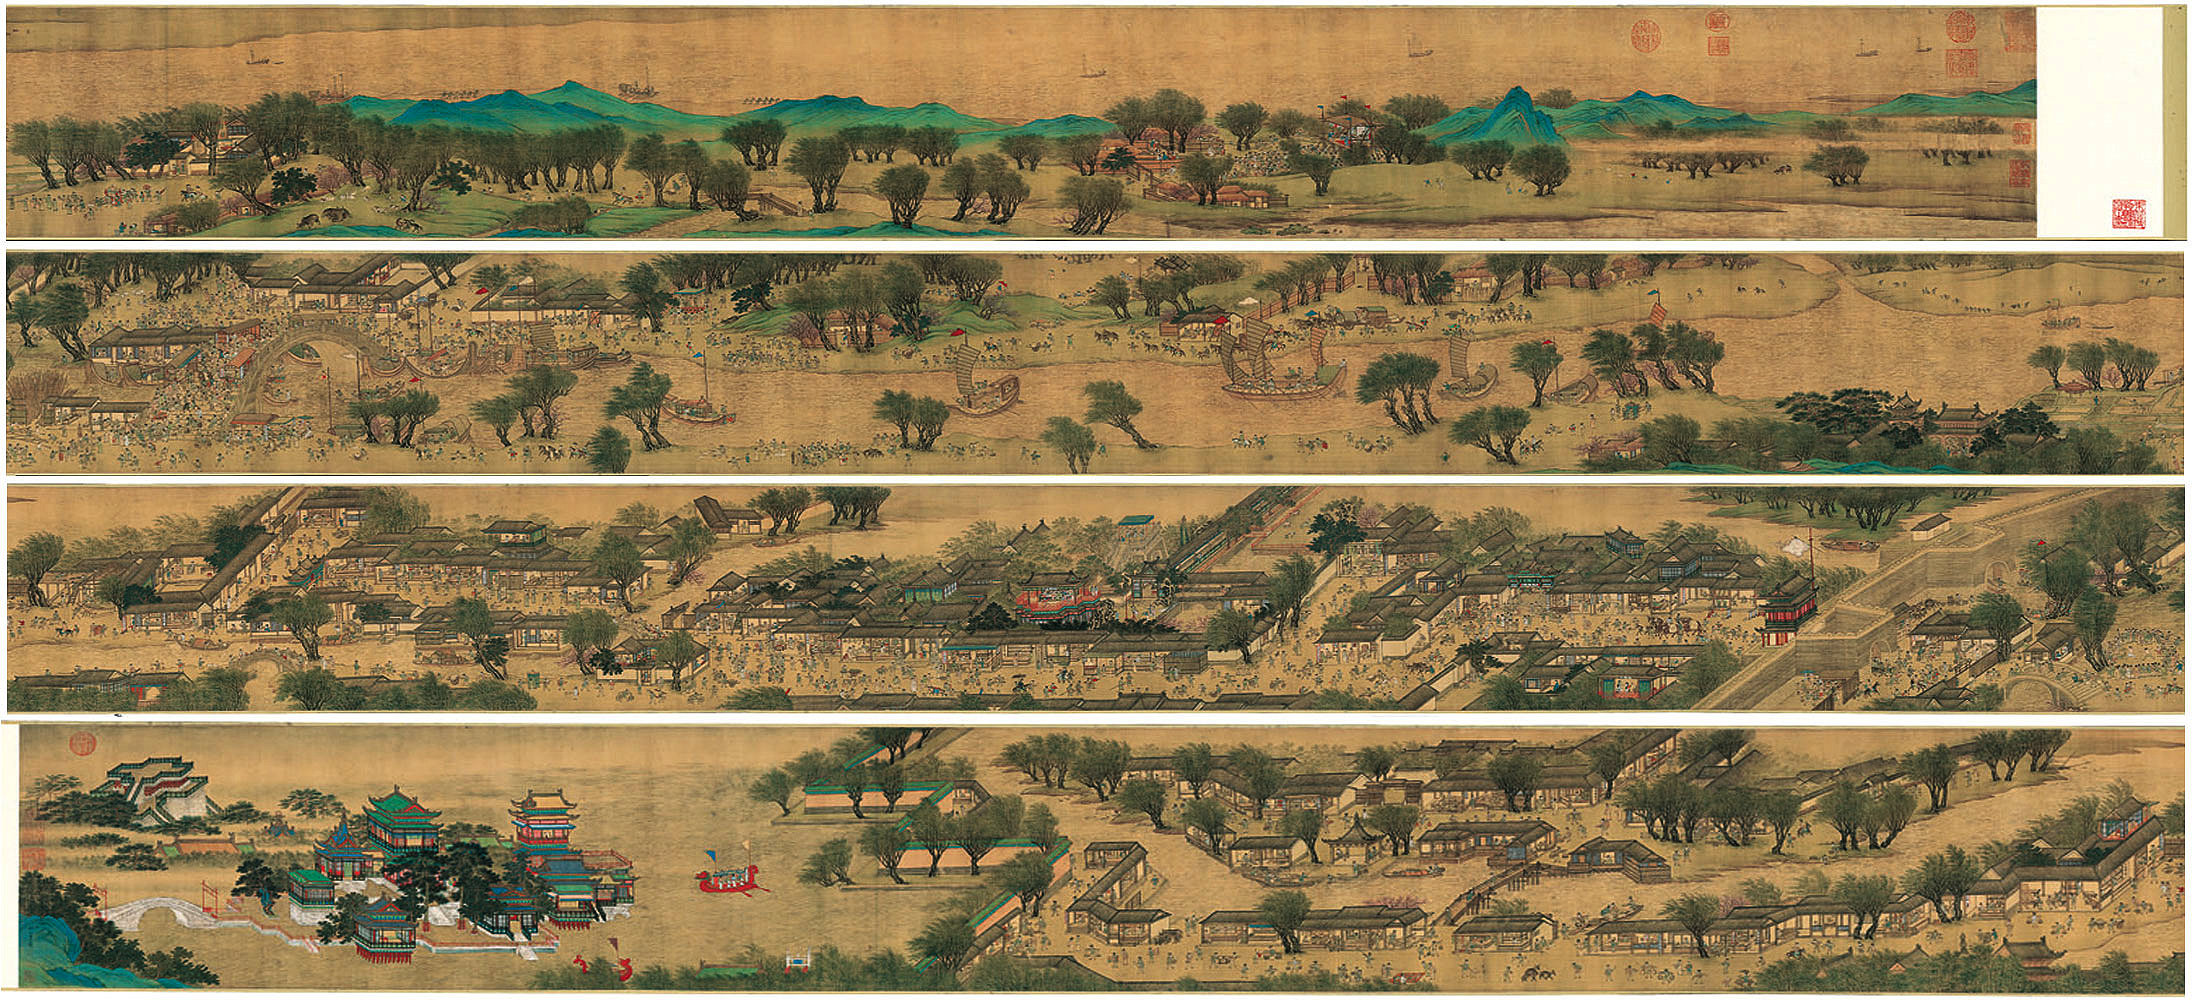  圖 明仇英的《清明上河圖》翻拍自網路，目前收藏於台北故宮博物院